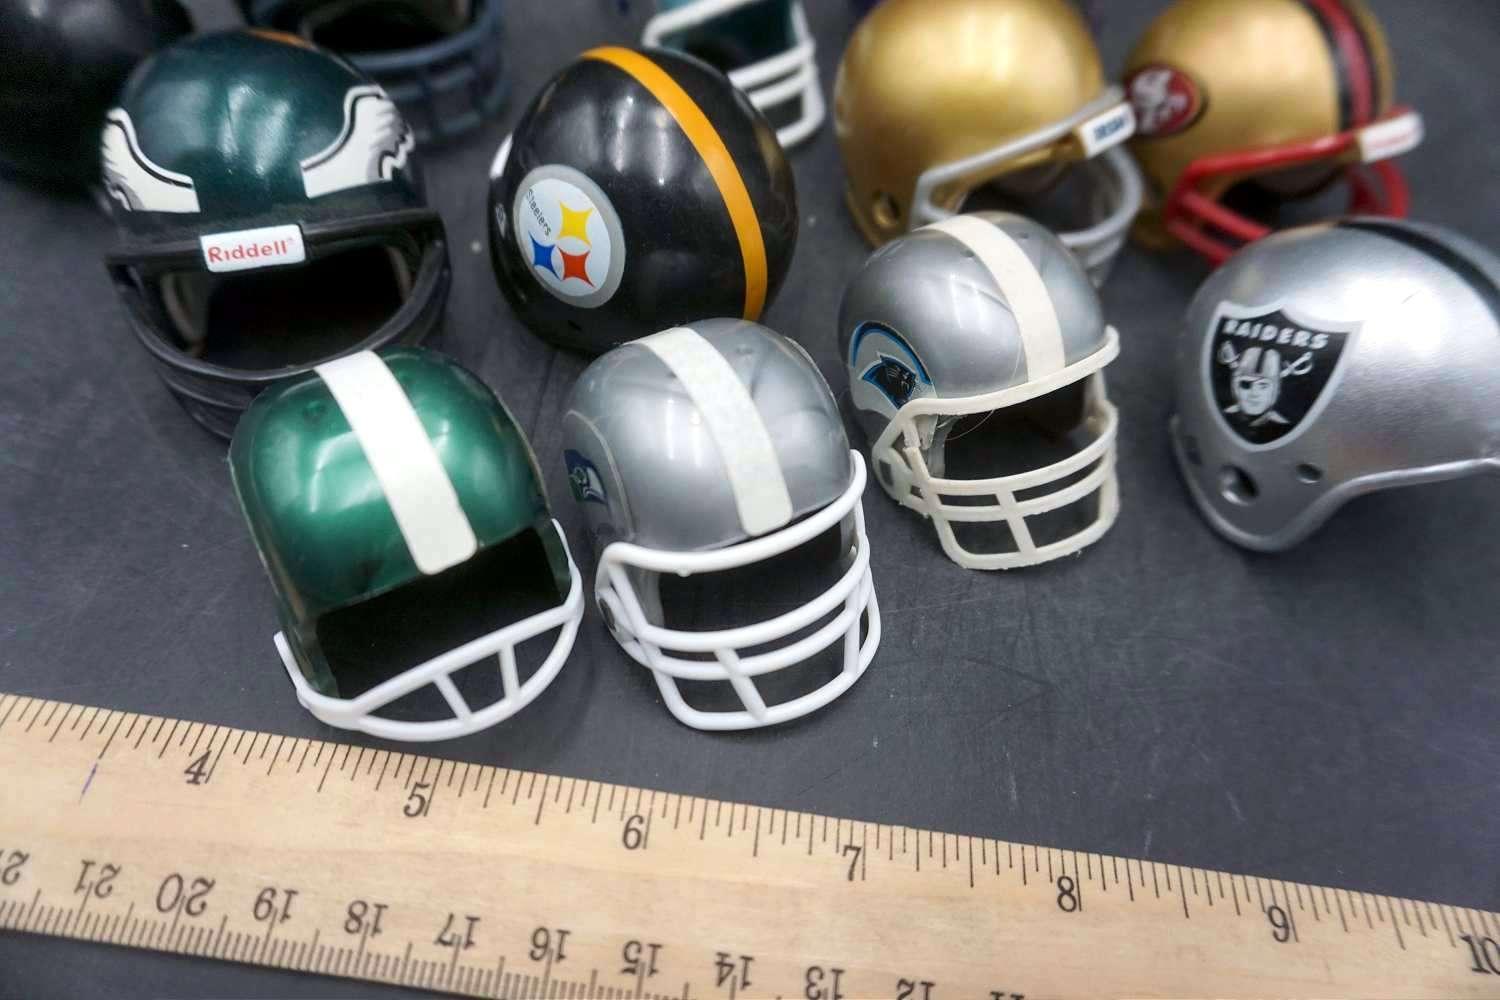 Mini Helmets